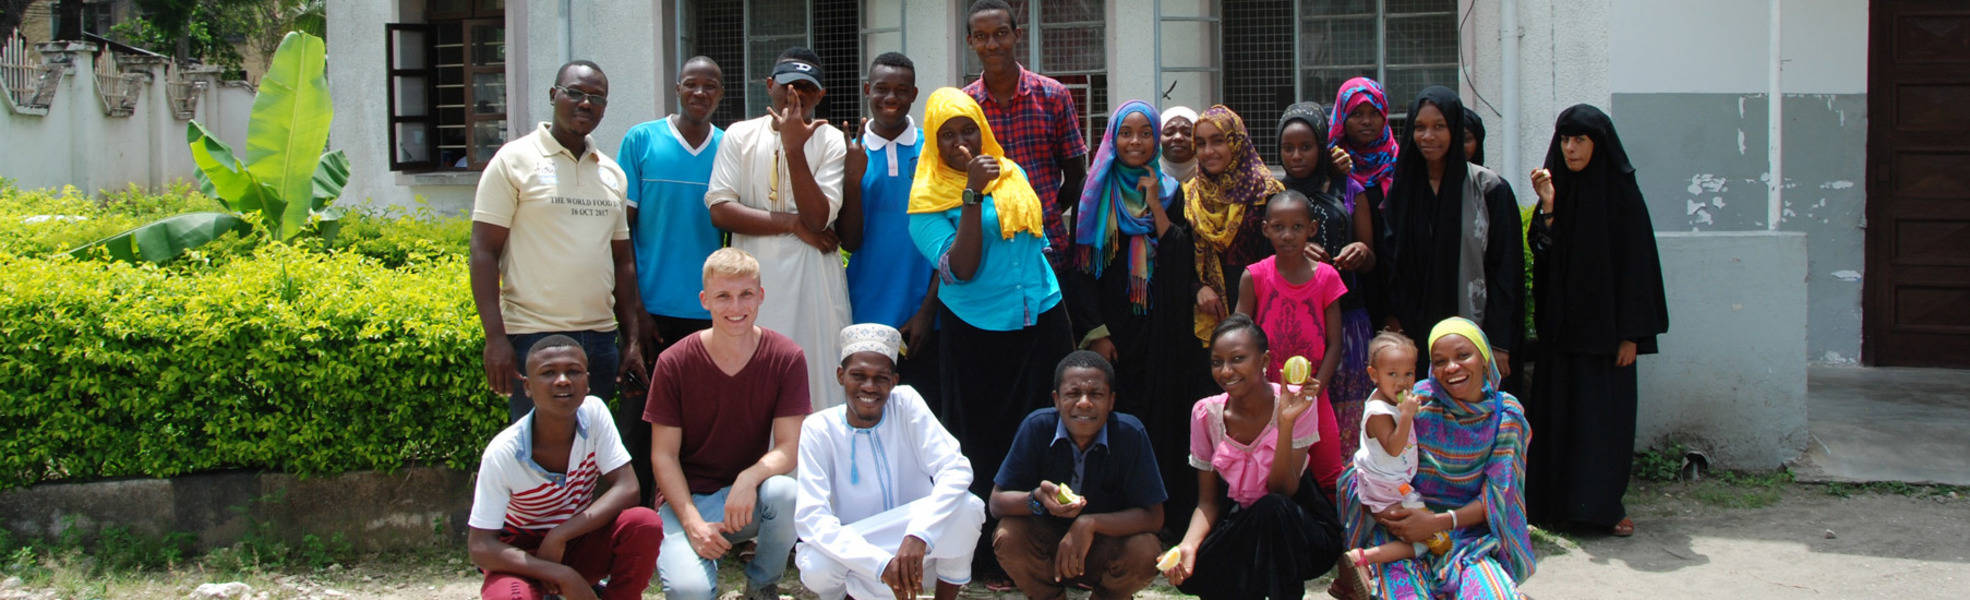 Freiwilligenarbeit im Bildungszentrum auf Sansibar